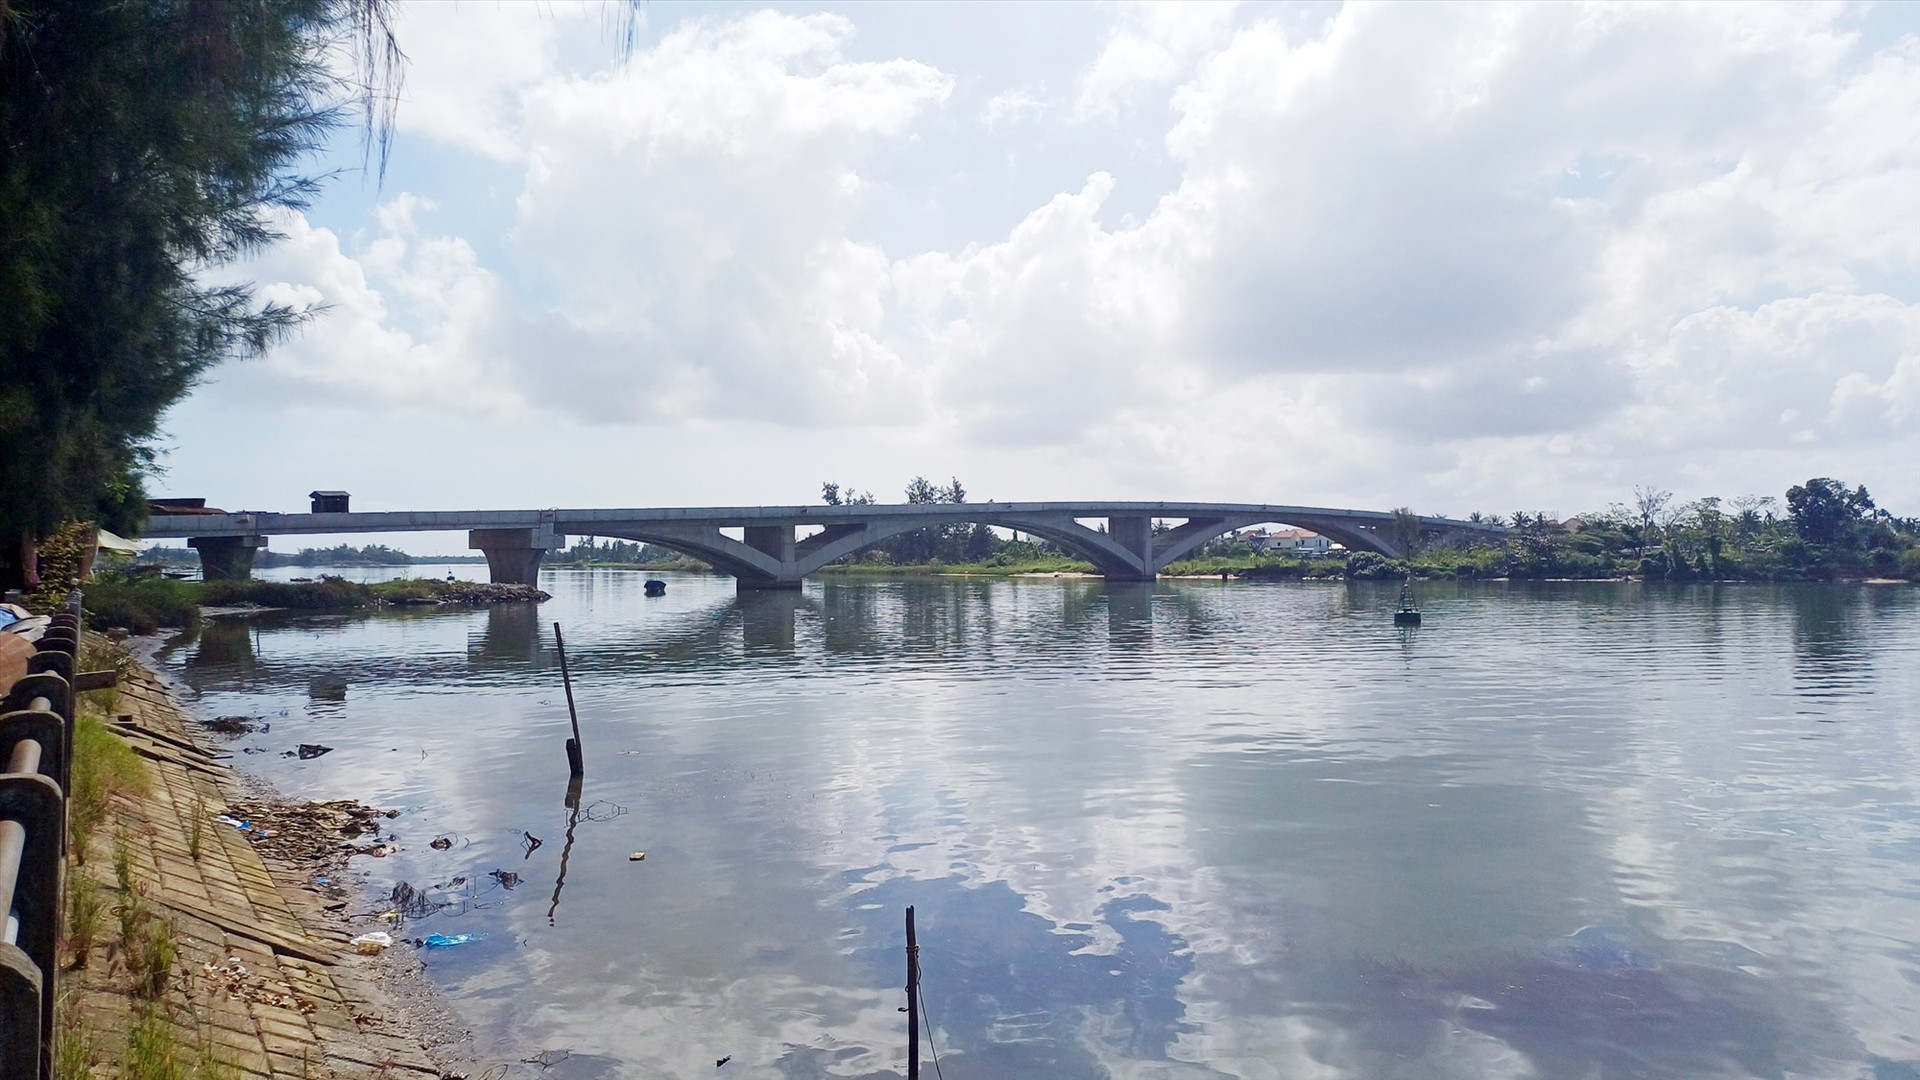 Cầu Thanh Nam bắc qua sông Thu Bồn có chiều dài tổng kinh phí đầu tư hơn 300 tỷ đồng. Ảnh: P.H